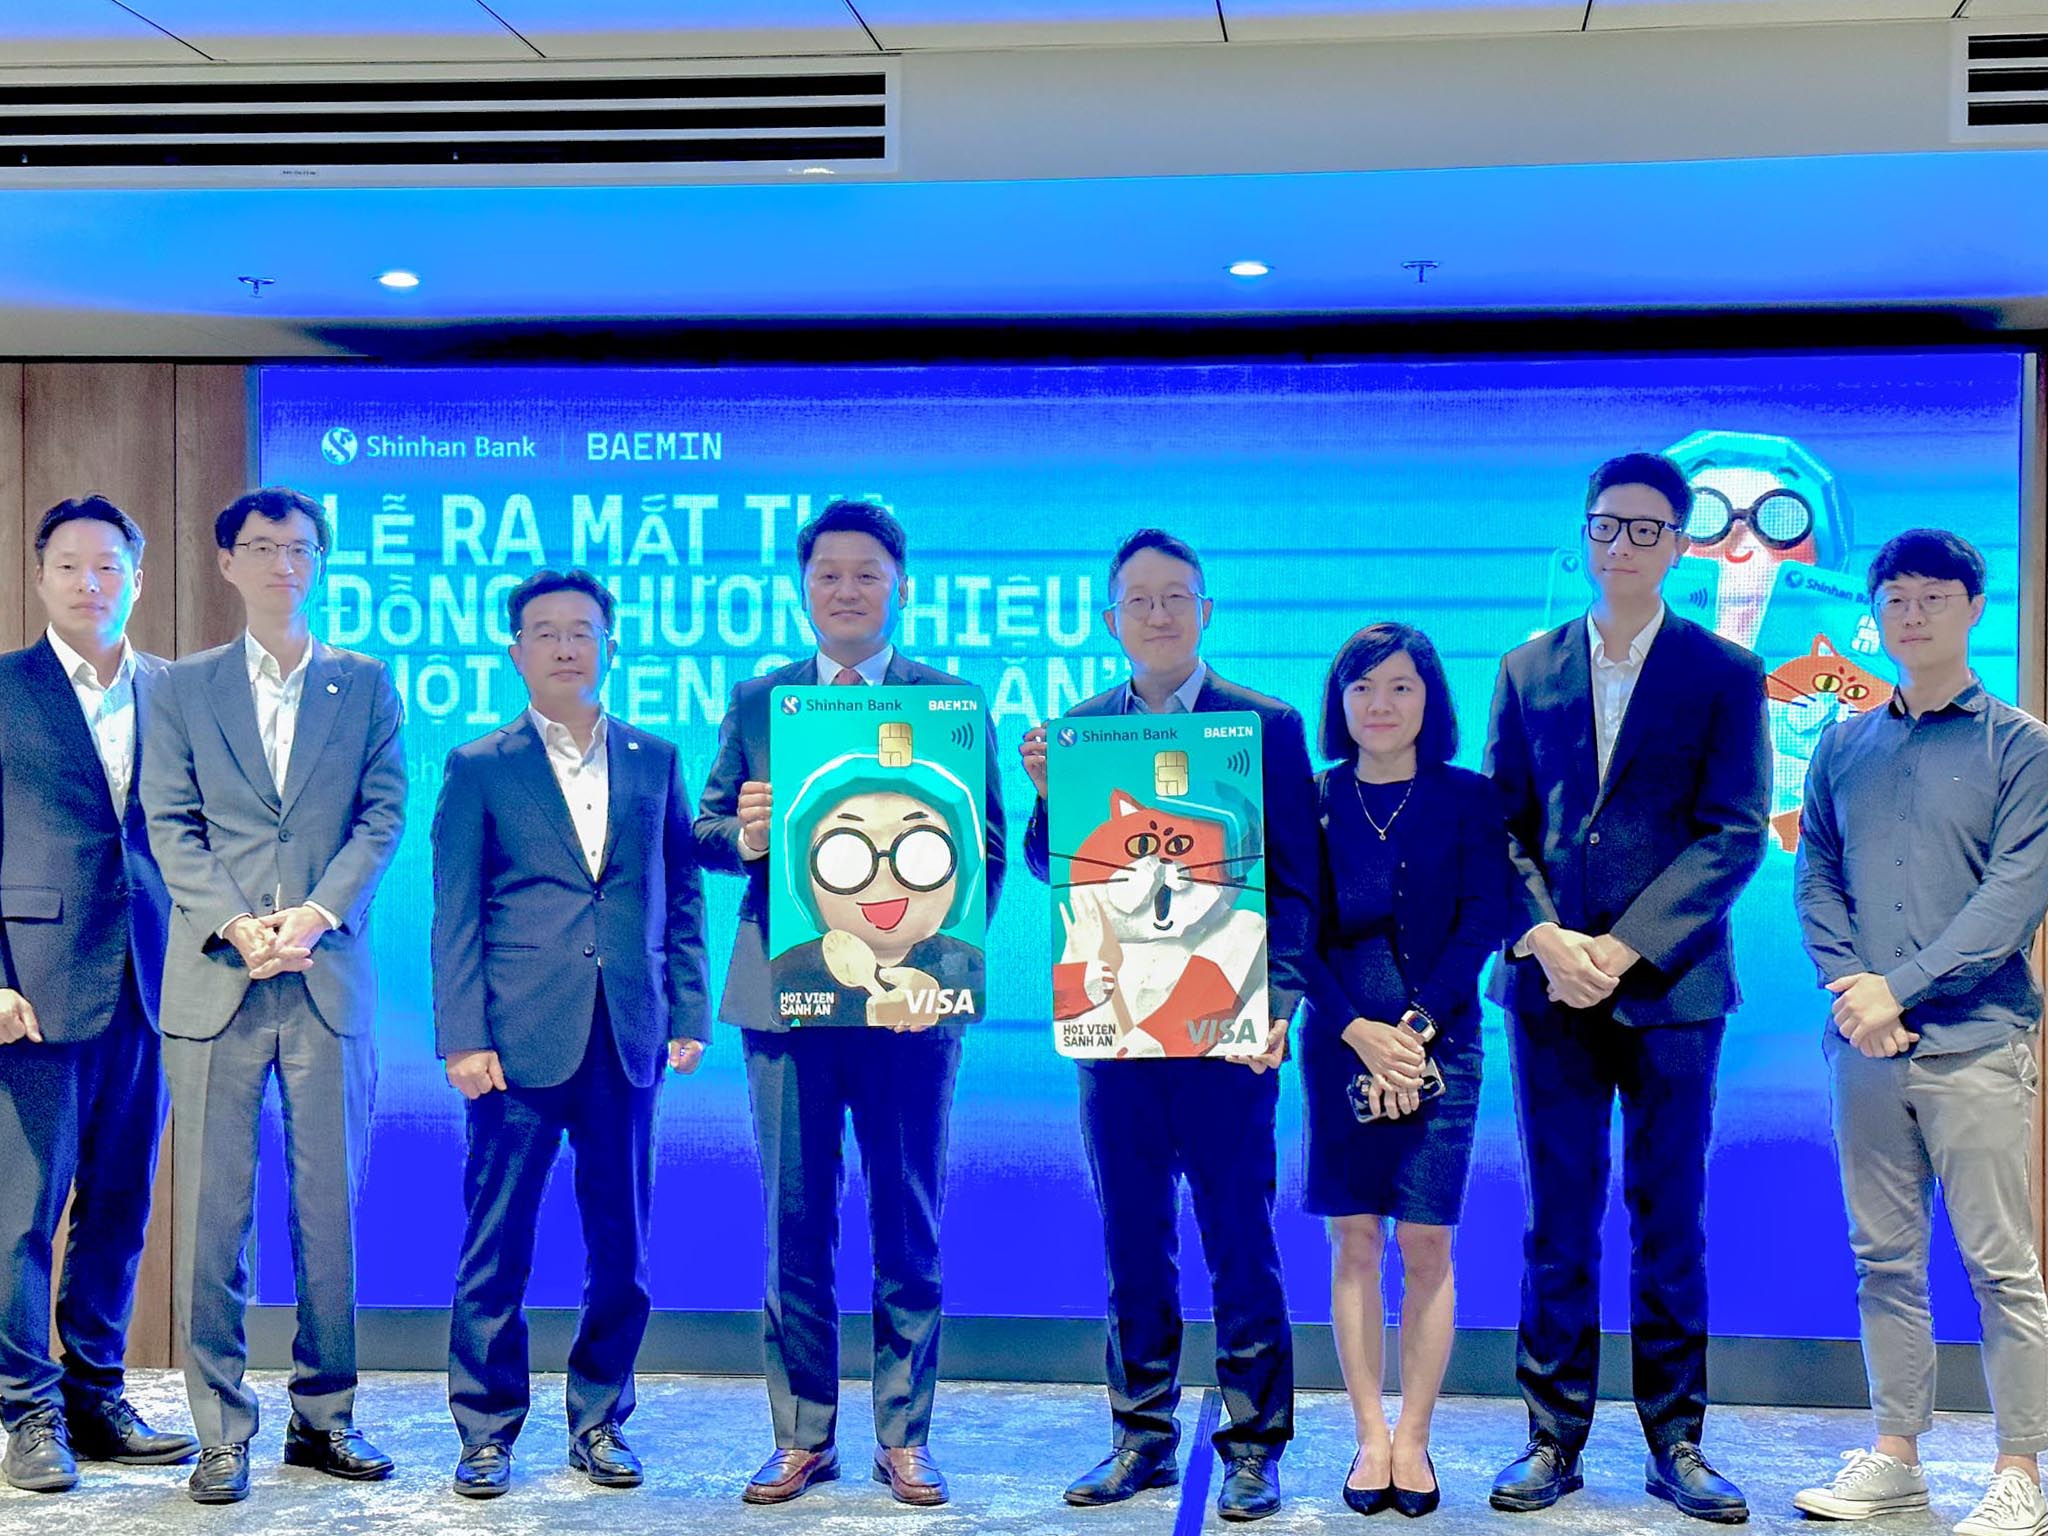 BAEMIN Việt Nam và Ngân hàng Shinhan ra mắt thẻ đồng thương hiệu  “Hội viên sành ăn”